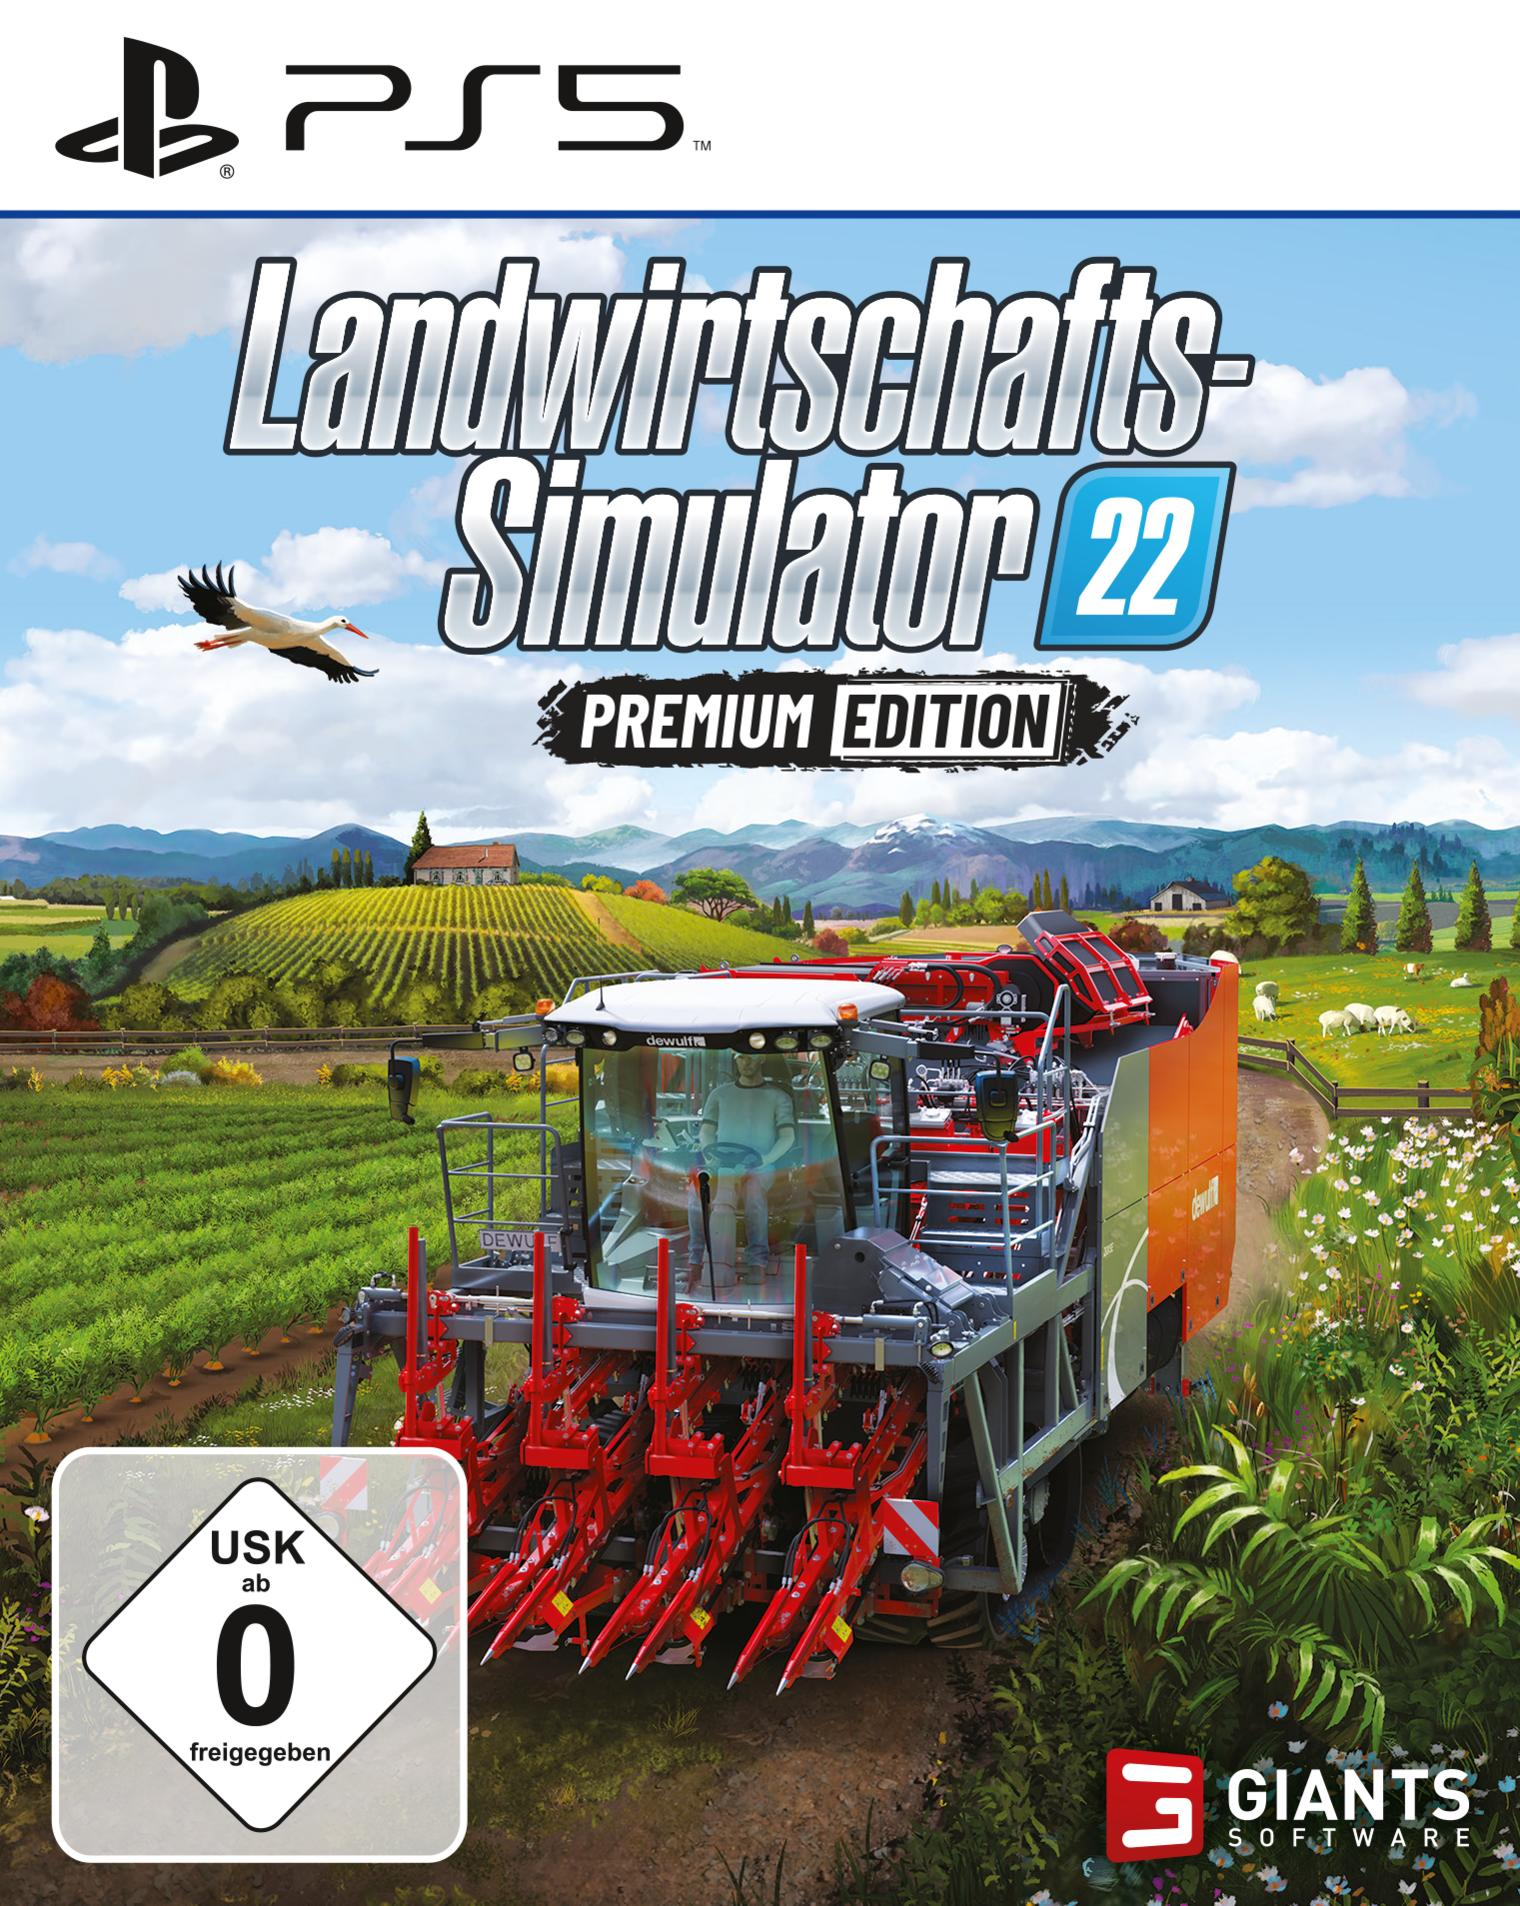 Premium - 5] Edition [PlayStation 22: Landwirtschafts-Simulator